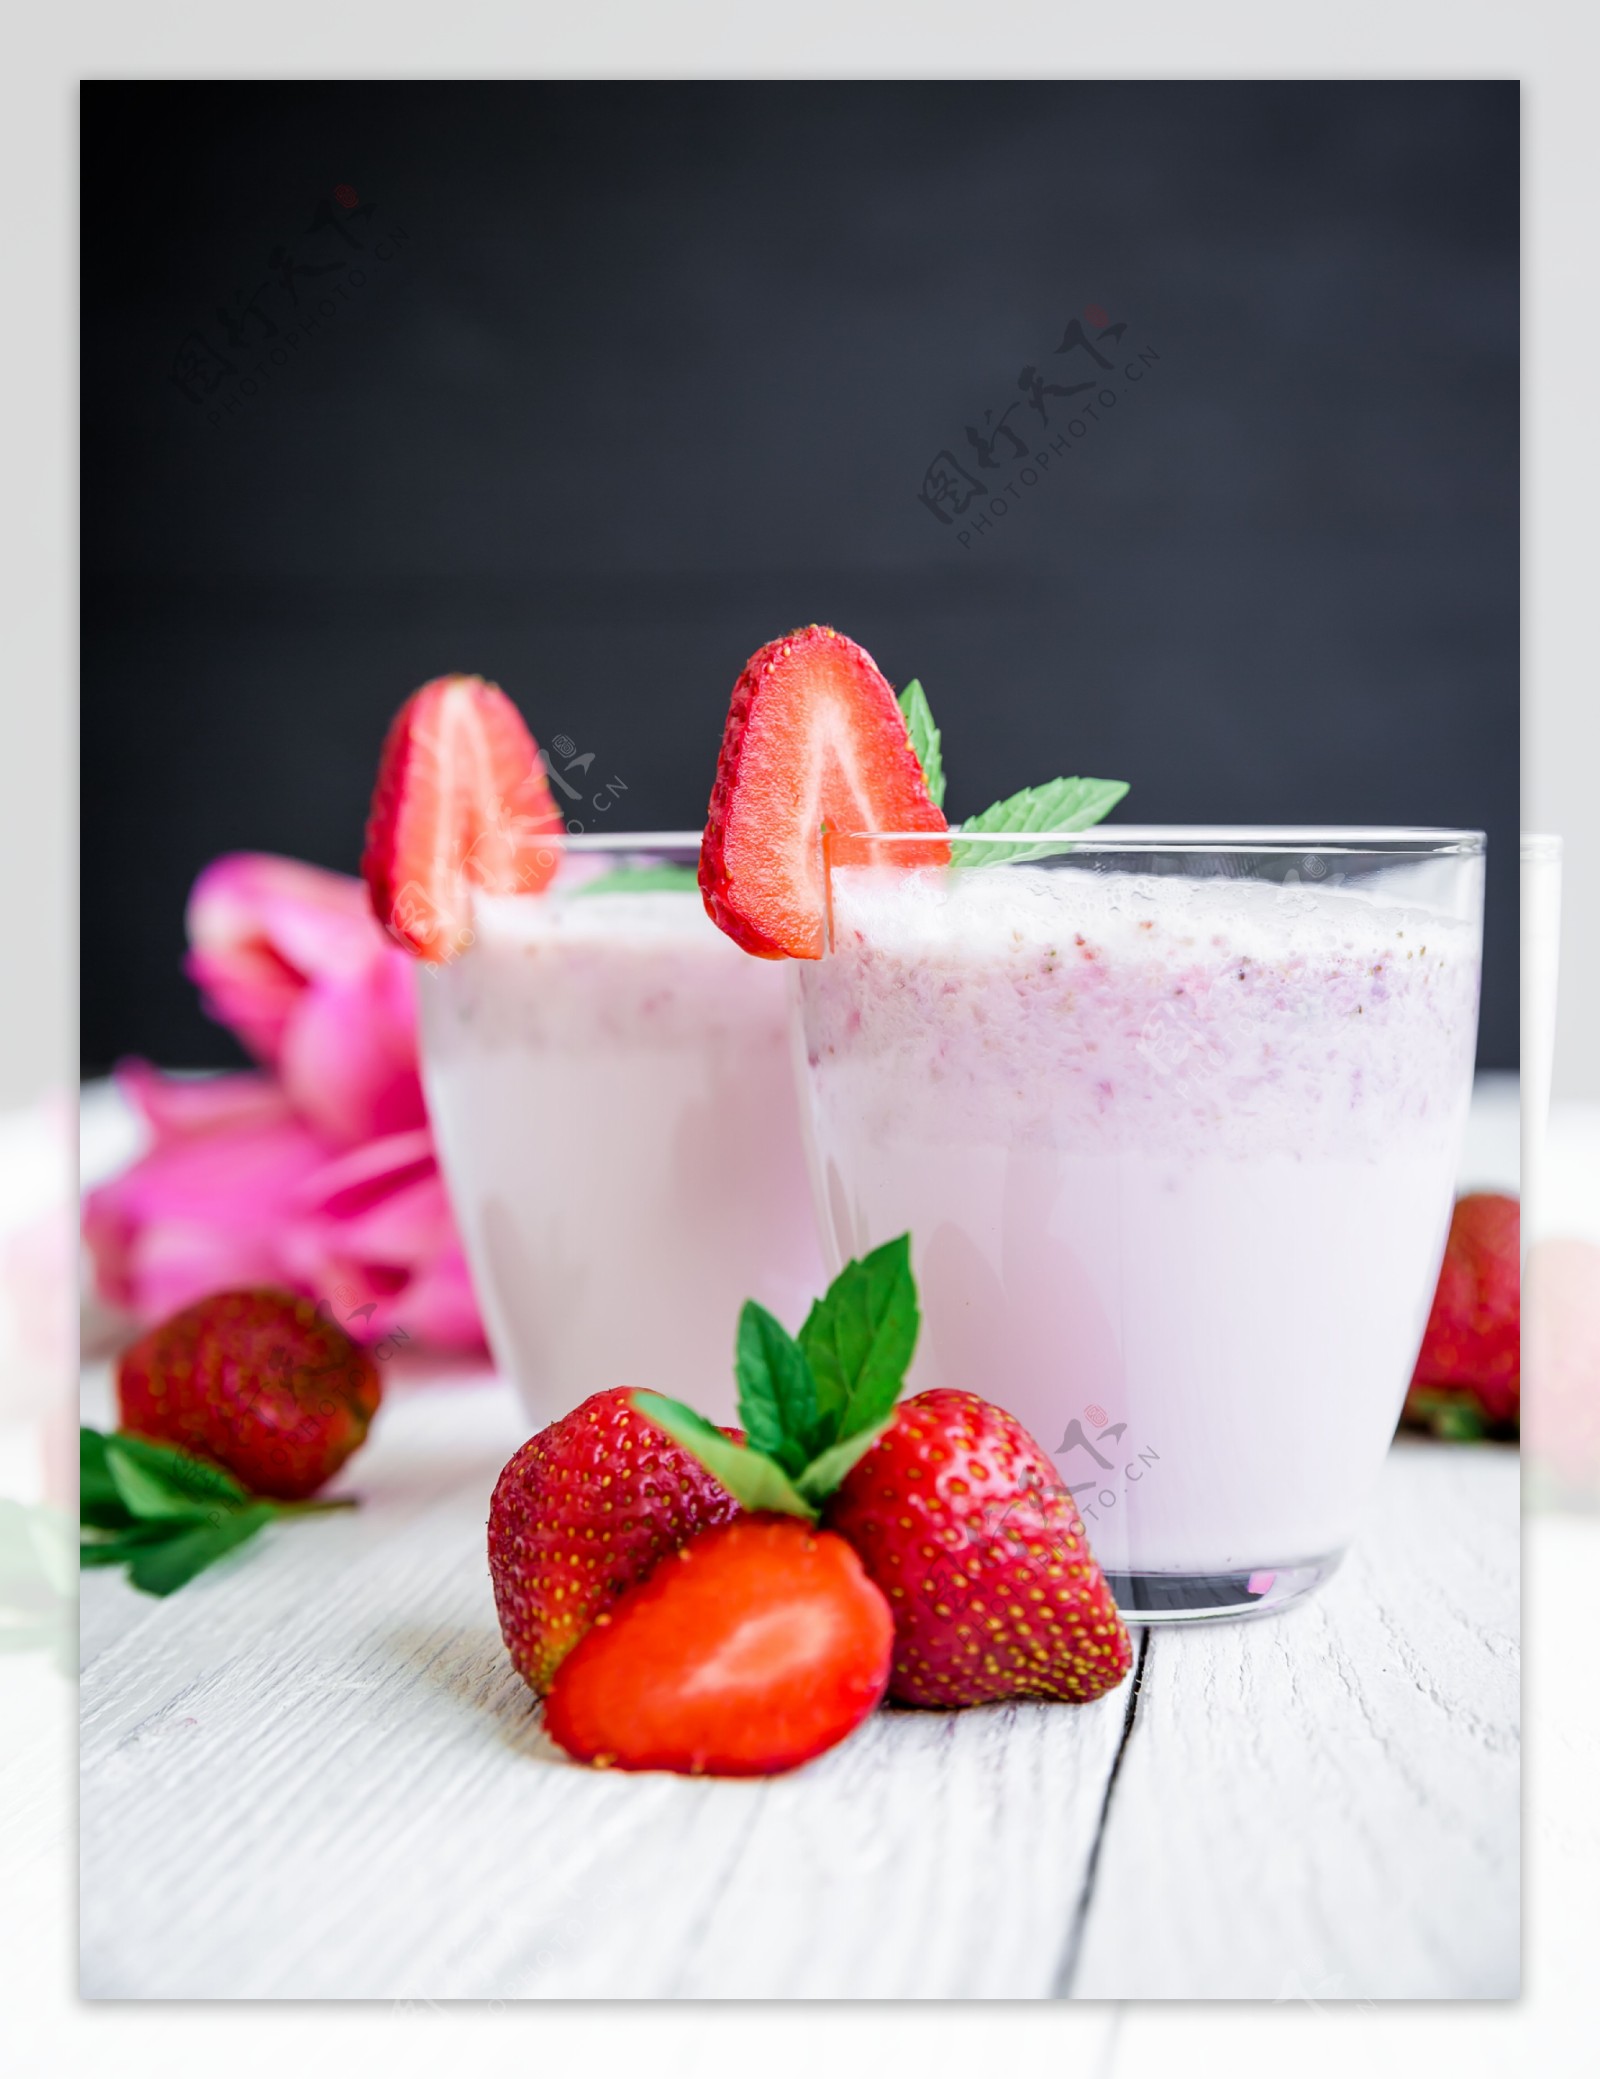 草莓冰淇凌 库存图片. 图片 包括有 草莓, 果子, 可口, 生活, 仍然, 新鲜, 夏天, 奶油, 食物 - 39626151